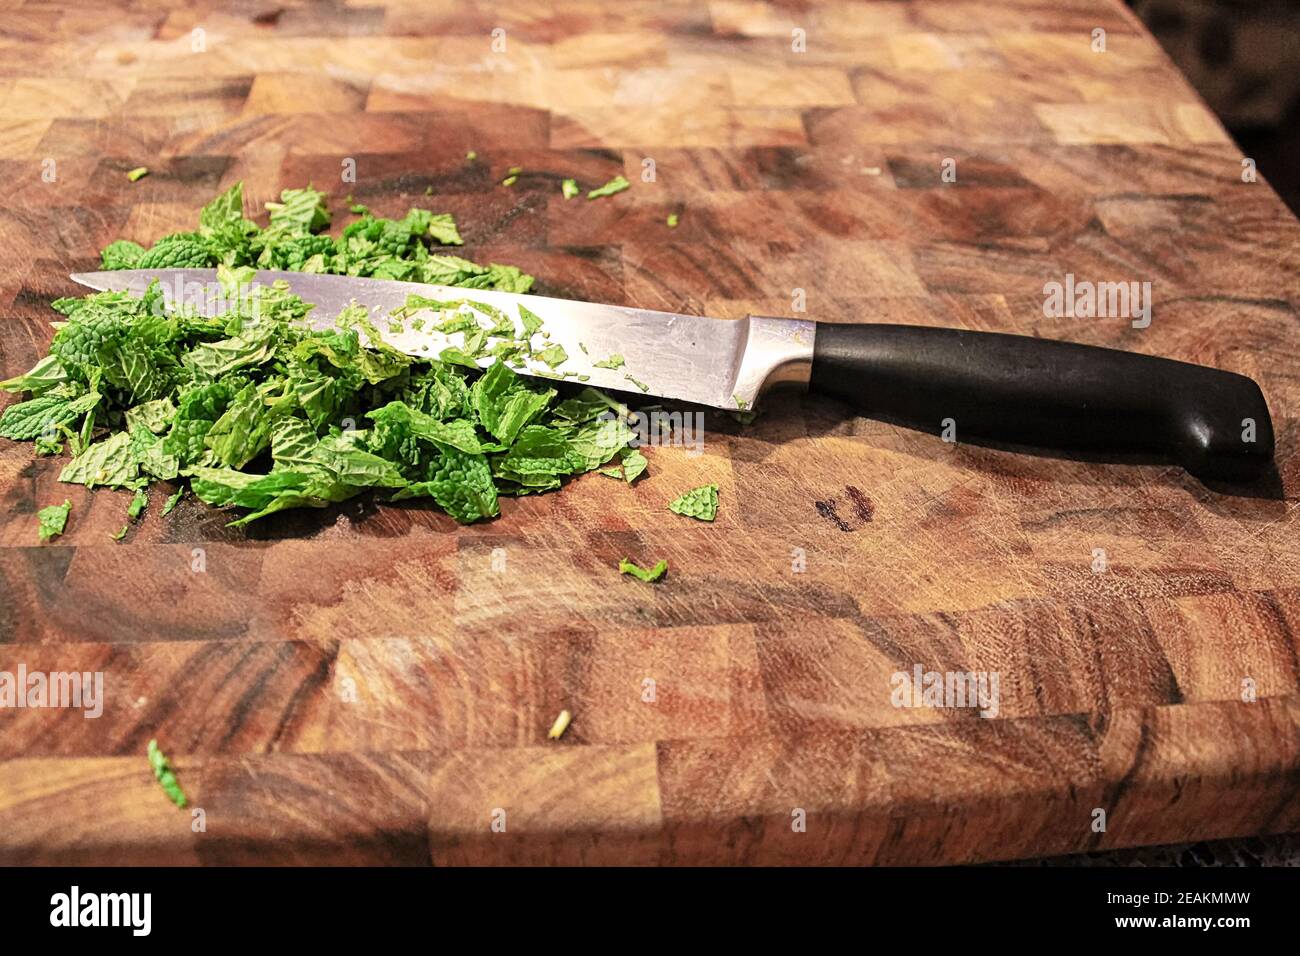 Gros plan d'un couteau sur une planche à découper avec du neuf menthe verte Banque D'Images